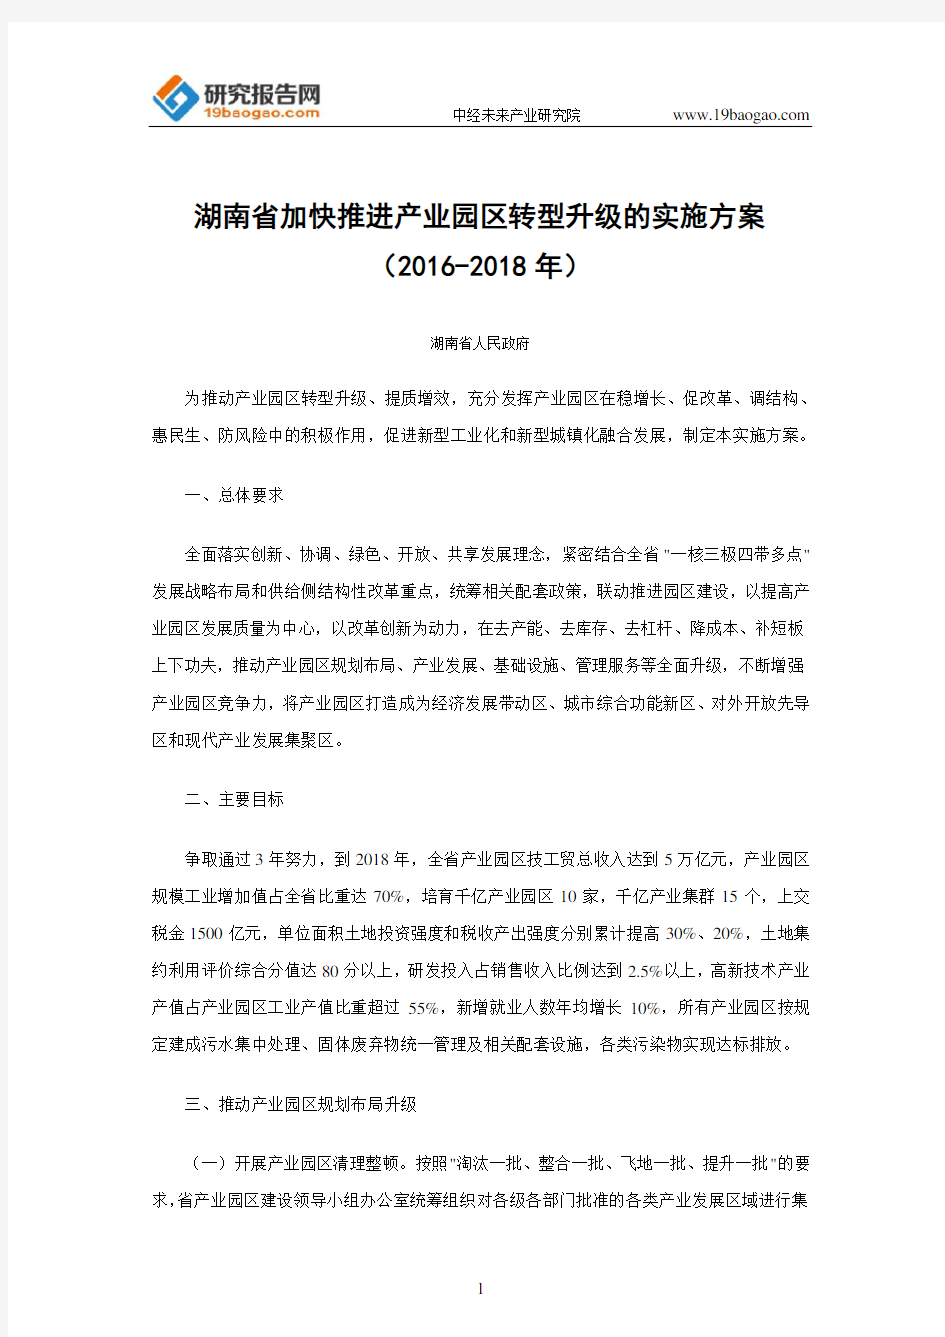 湖南省加快推进产业园区转型升级的实施方案(2016-2018年)